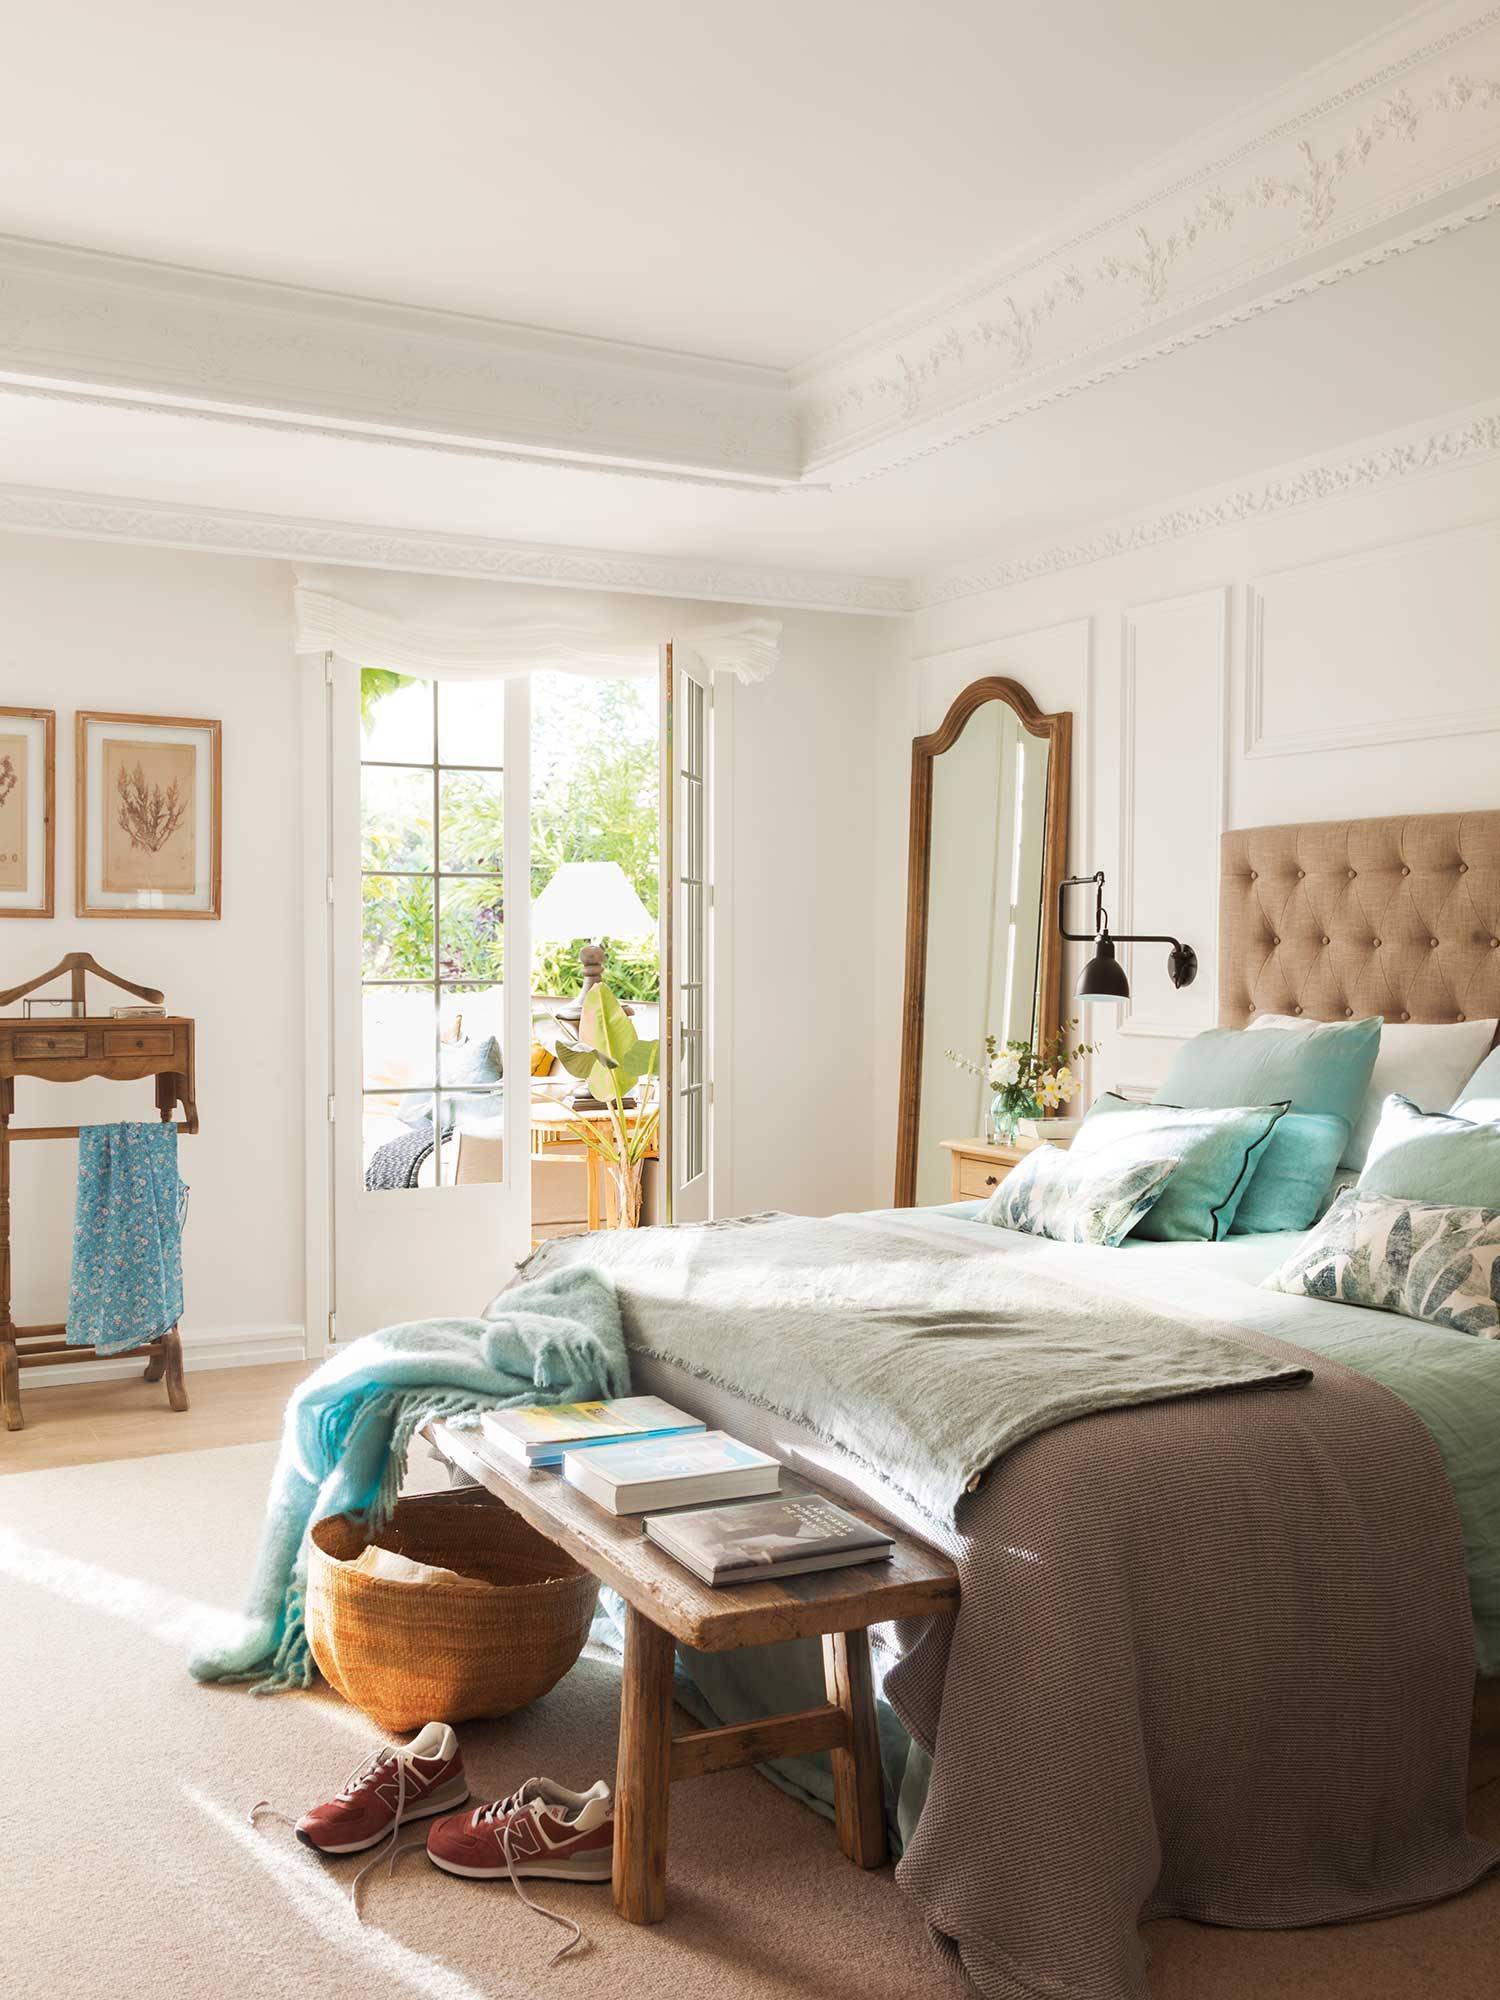 Dormitorio clásico con molduras en blanco_00506970